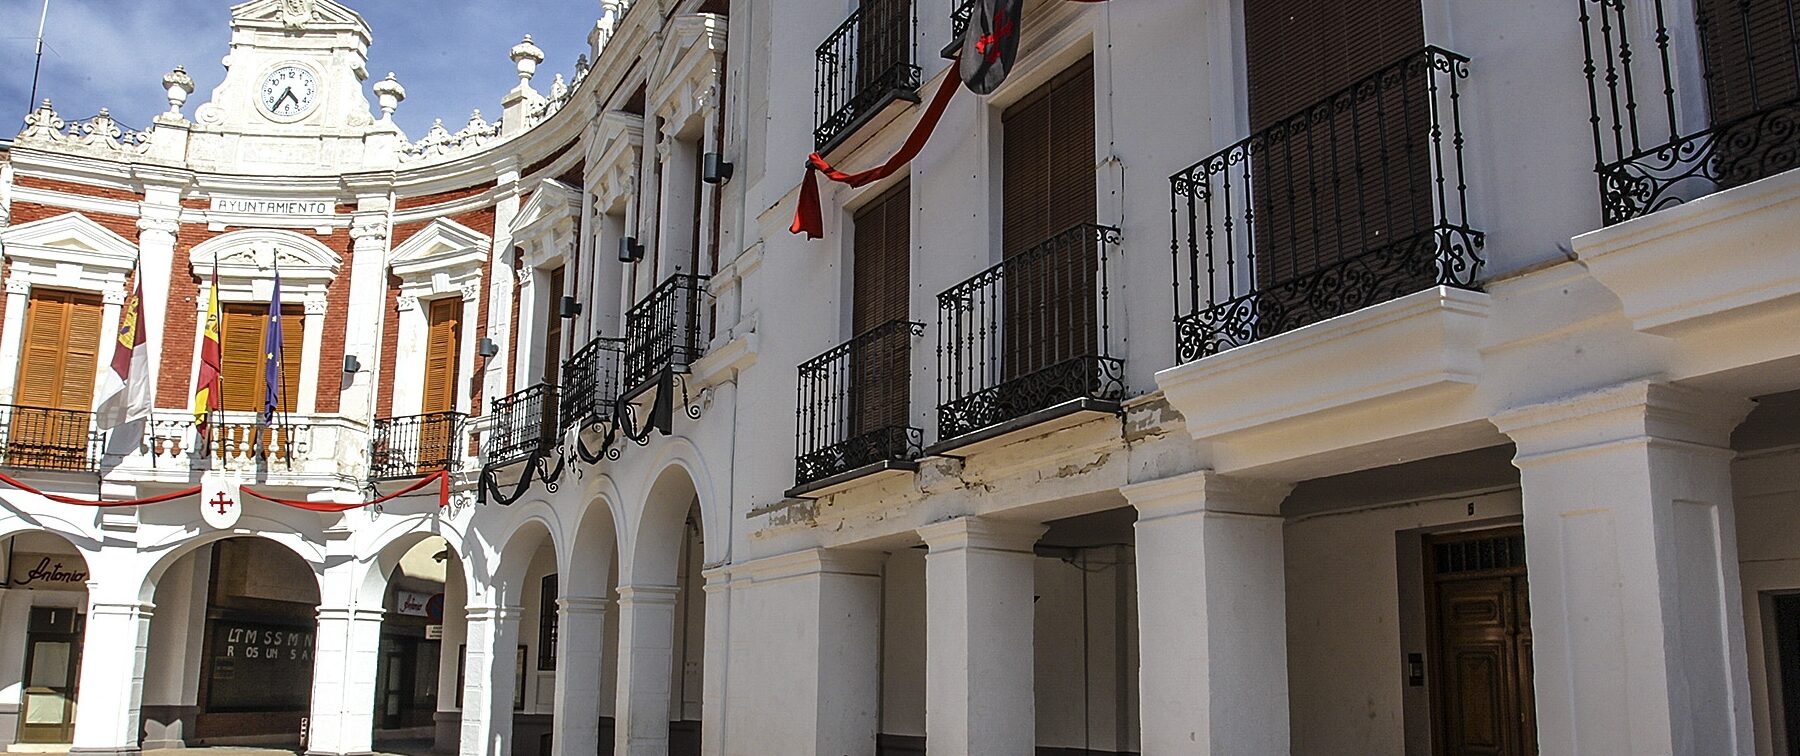 EL MOLINO GRANDE DE MANZANARES		Manzanares	Ciudad Real	Museo